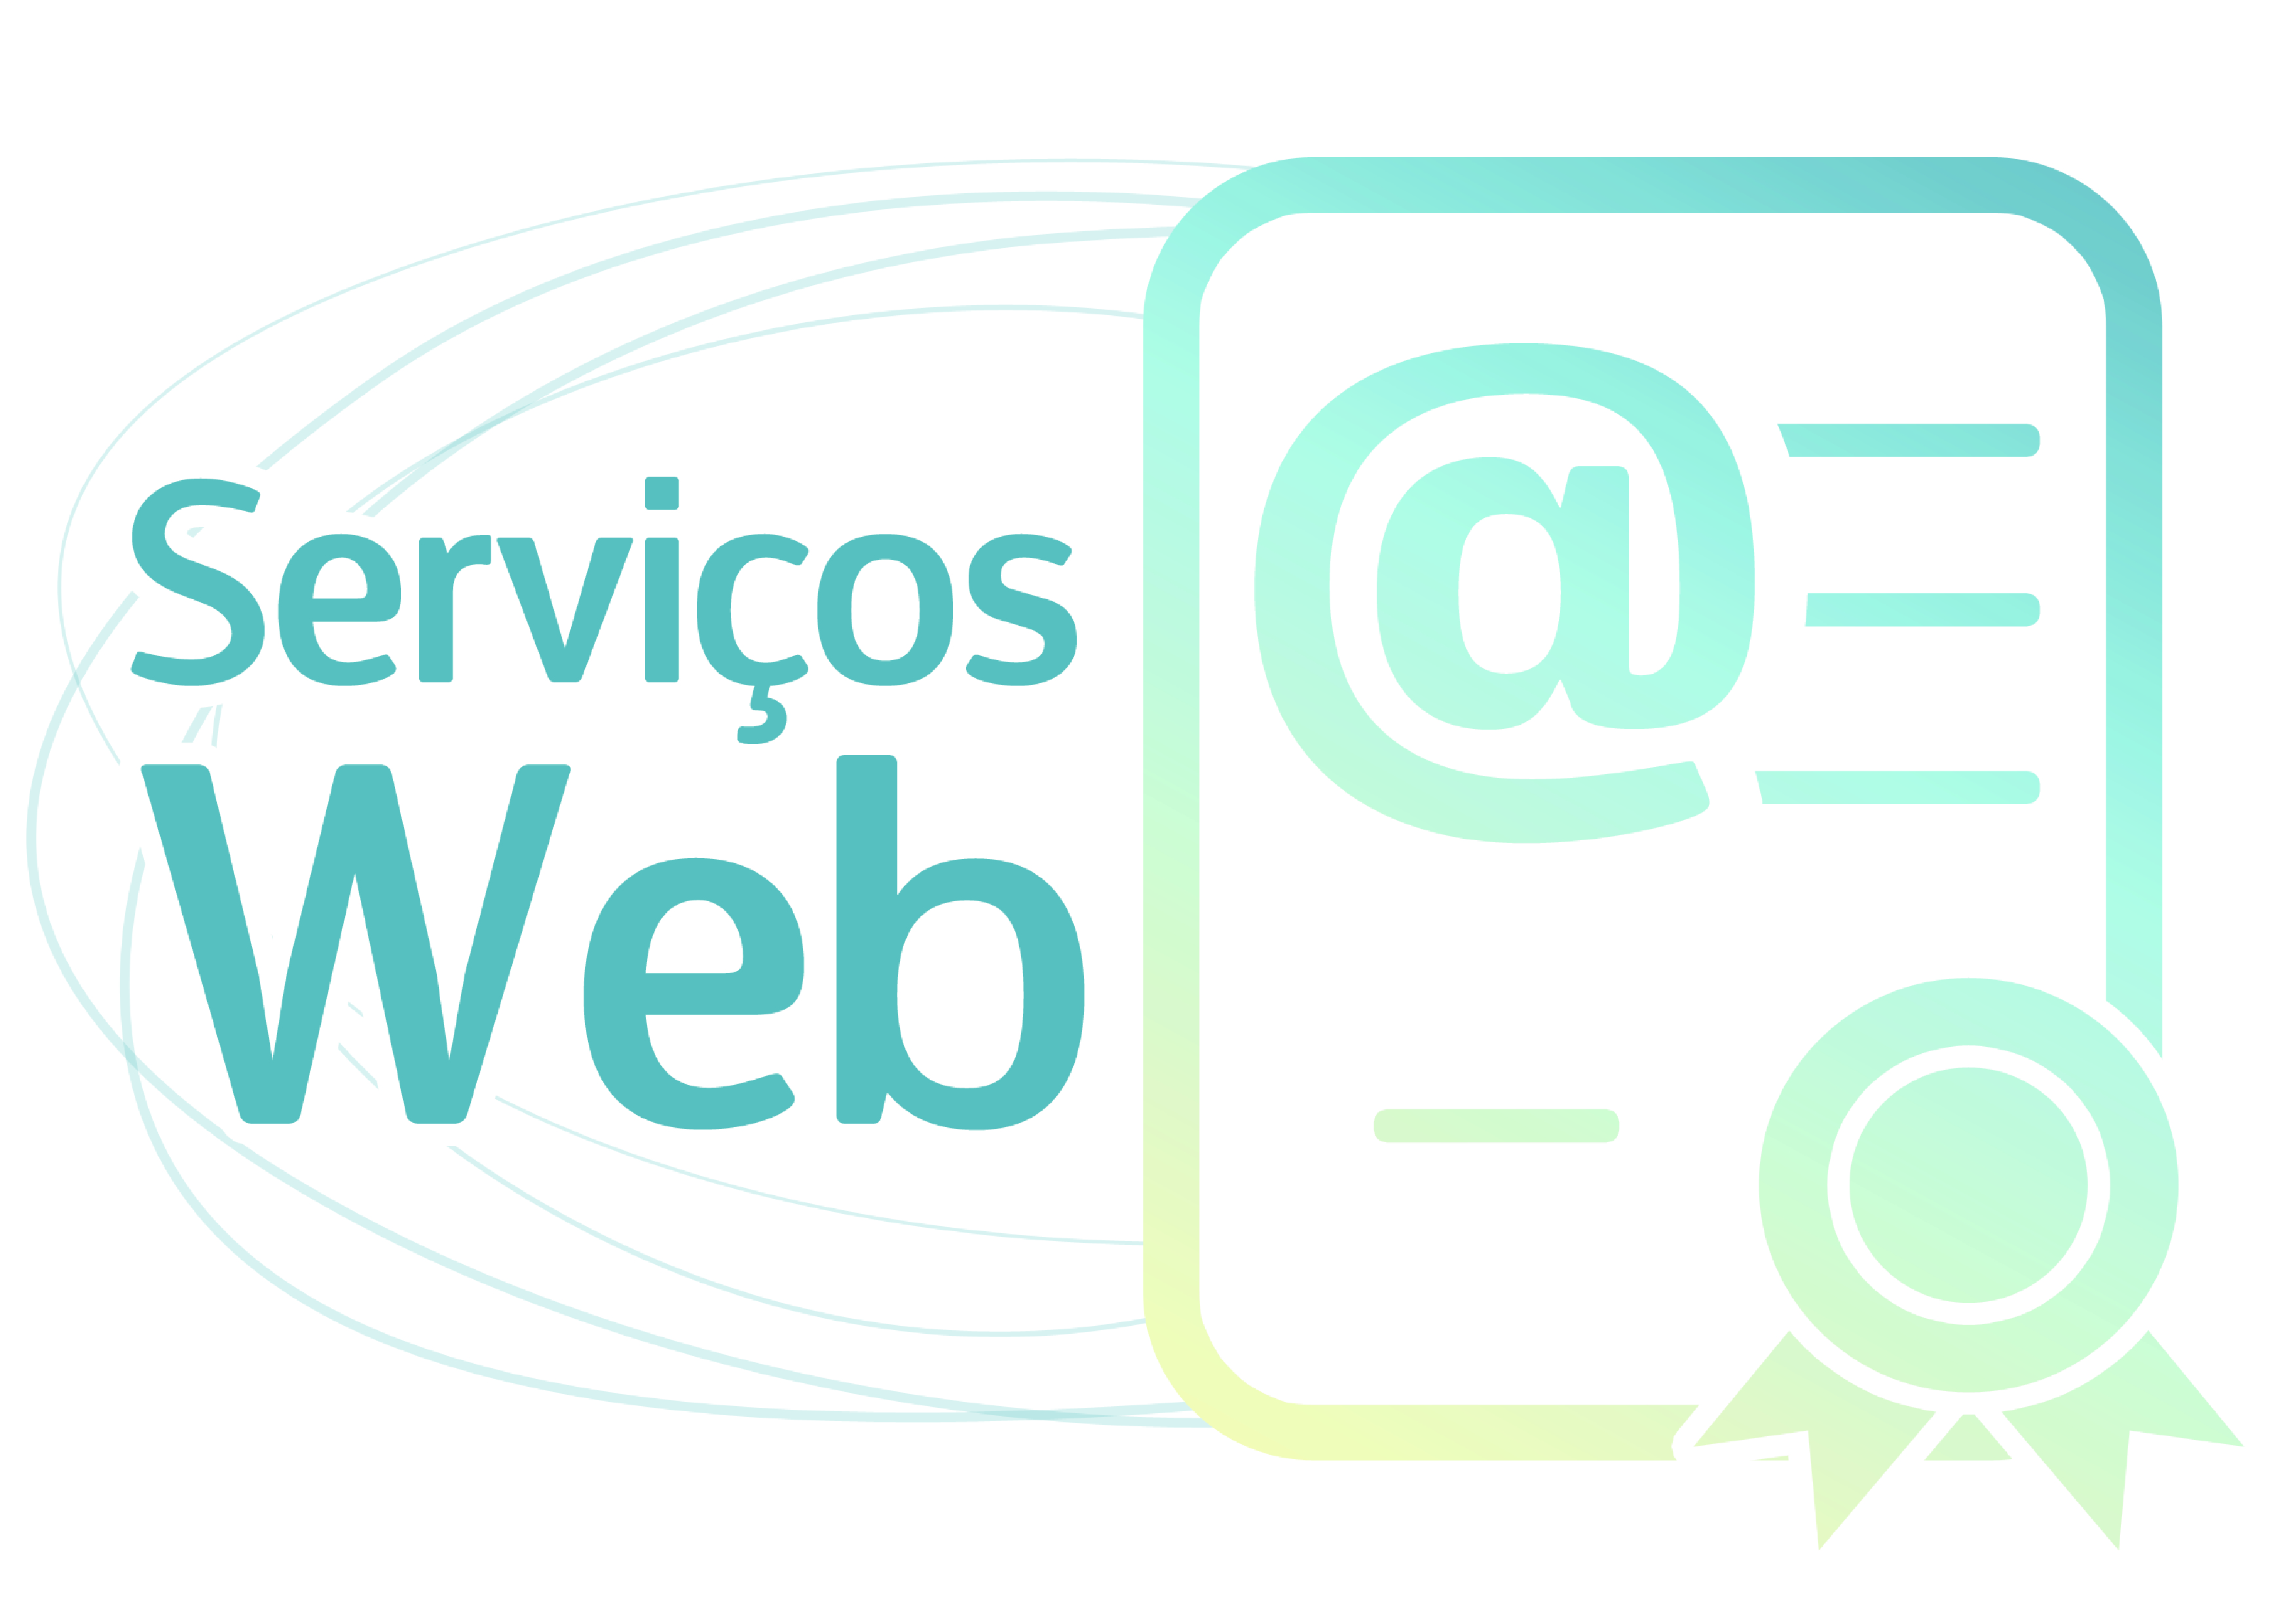 Serviços Web disponíveis no Portal da Jucemg trazem mais benefícios para cidadão-usuário